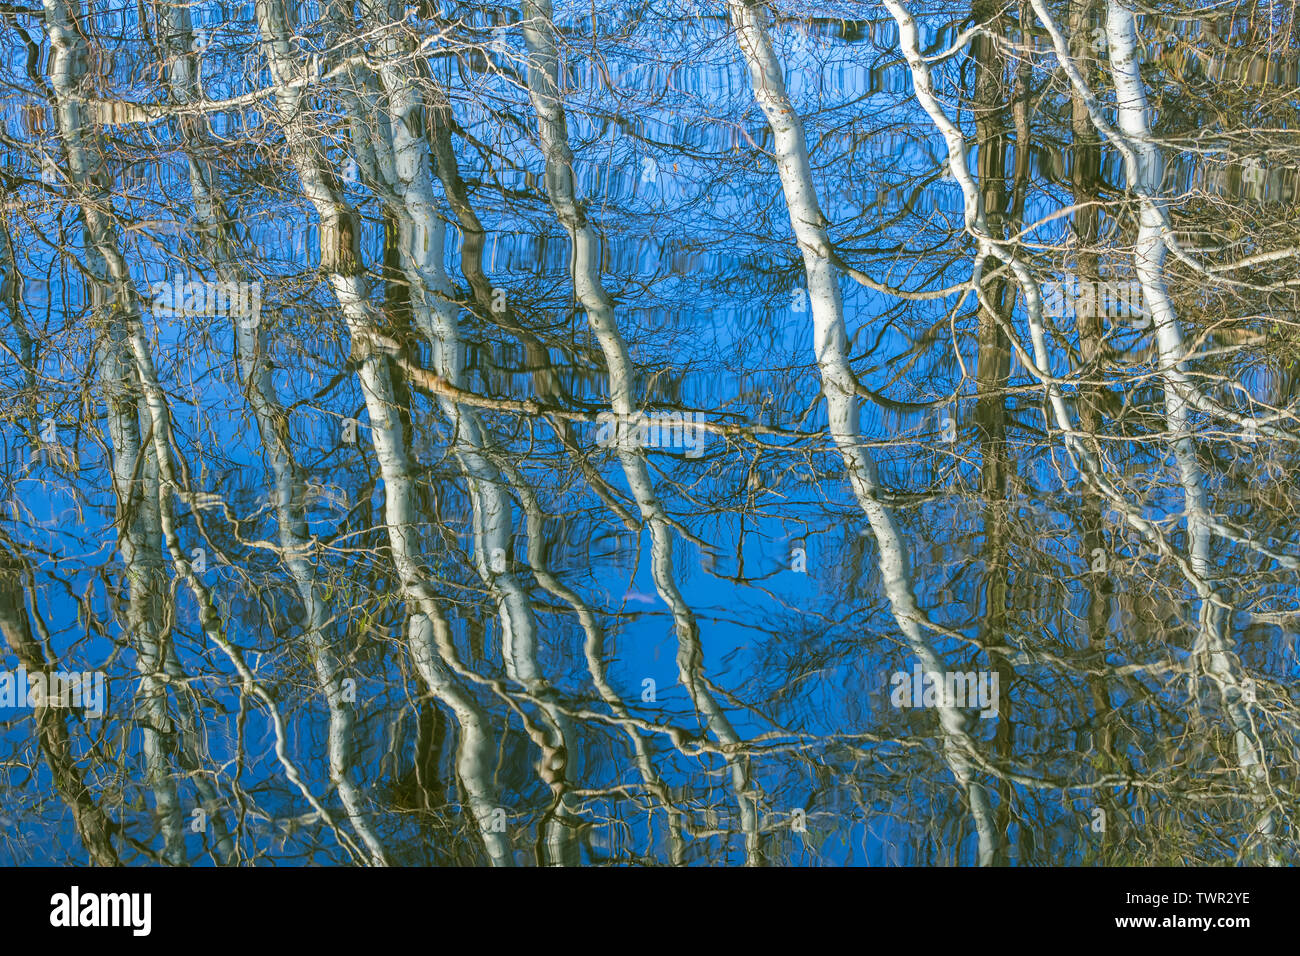 Riflessioni di foresta in uno stagno, molla, orientale degli Stati Uniti, di Dominique Braud/Dembinsky Foto Assoc Foto Stock